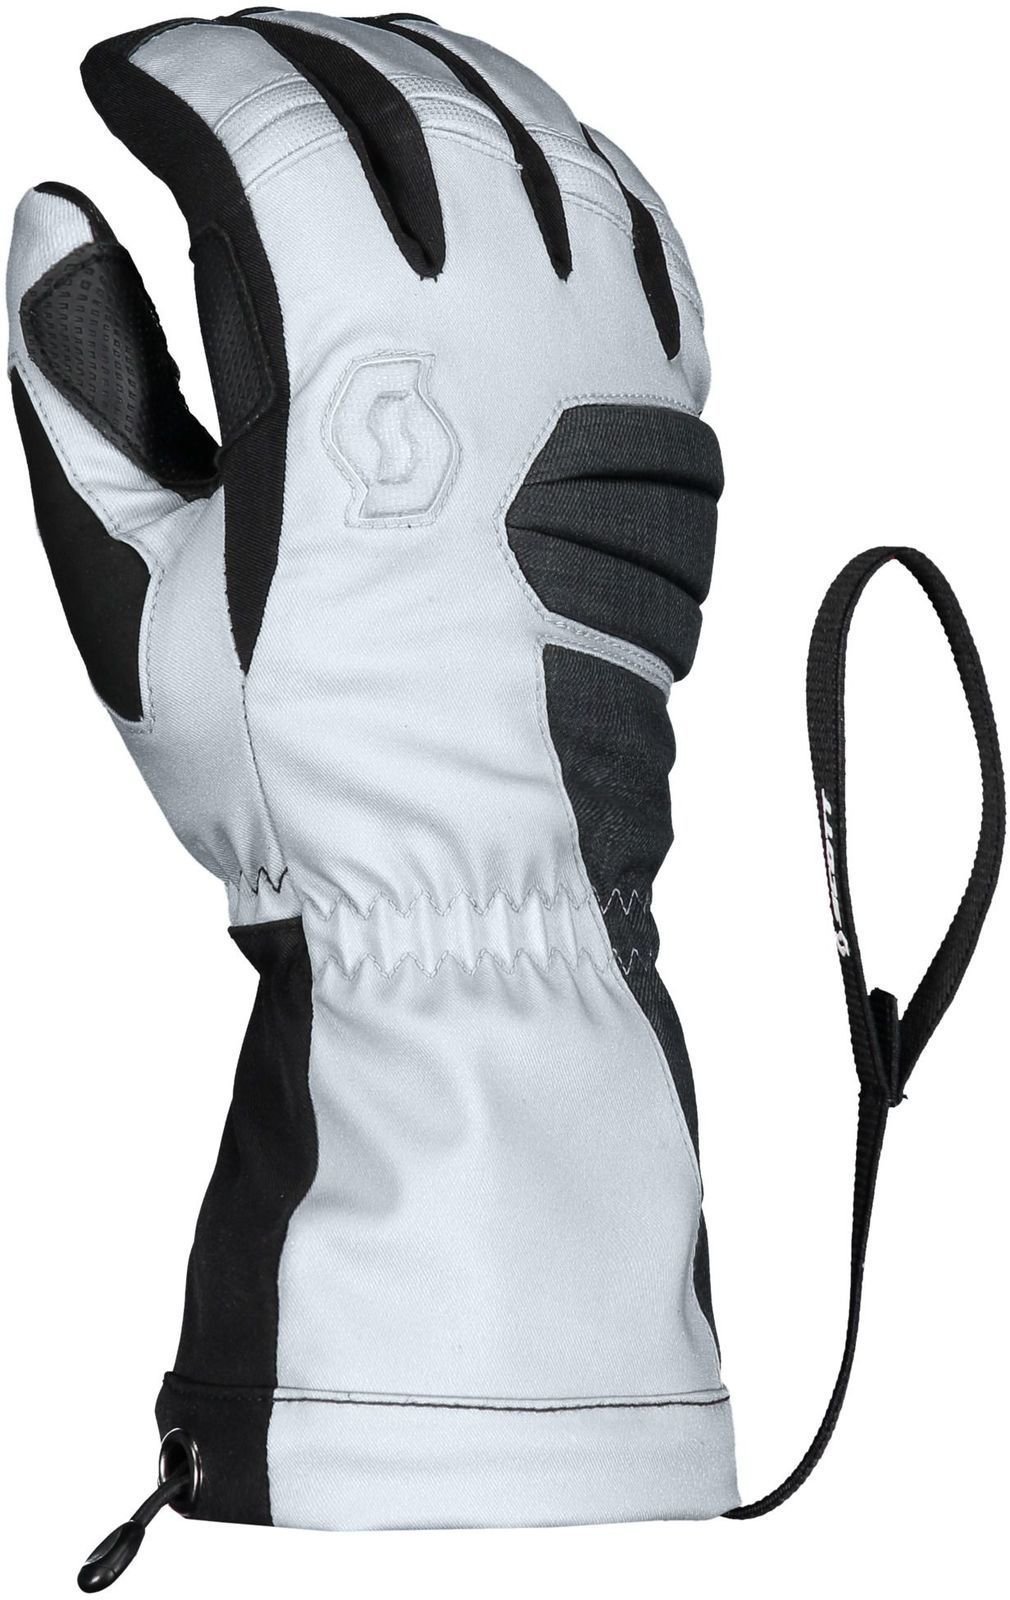 Ski Gloves Scott Ultimate Premium GTX Black/Silver White S Ski Gloves